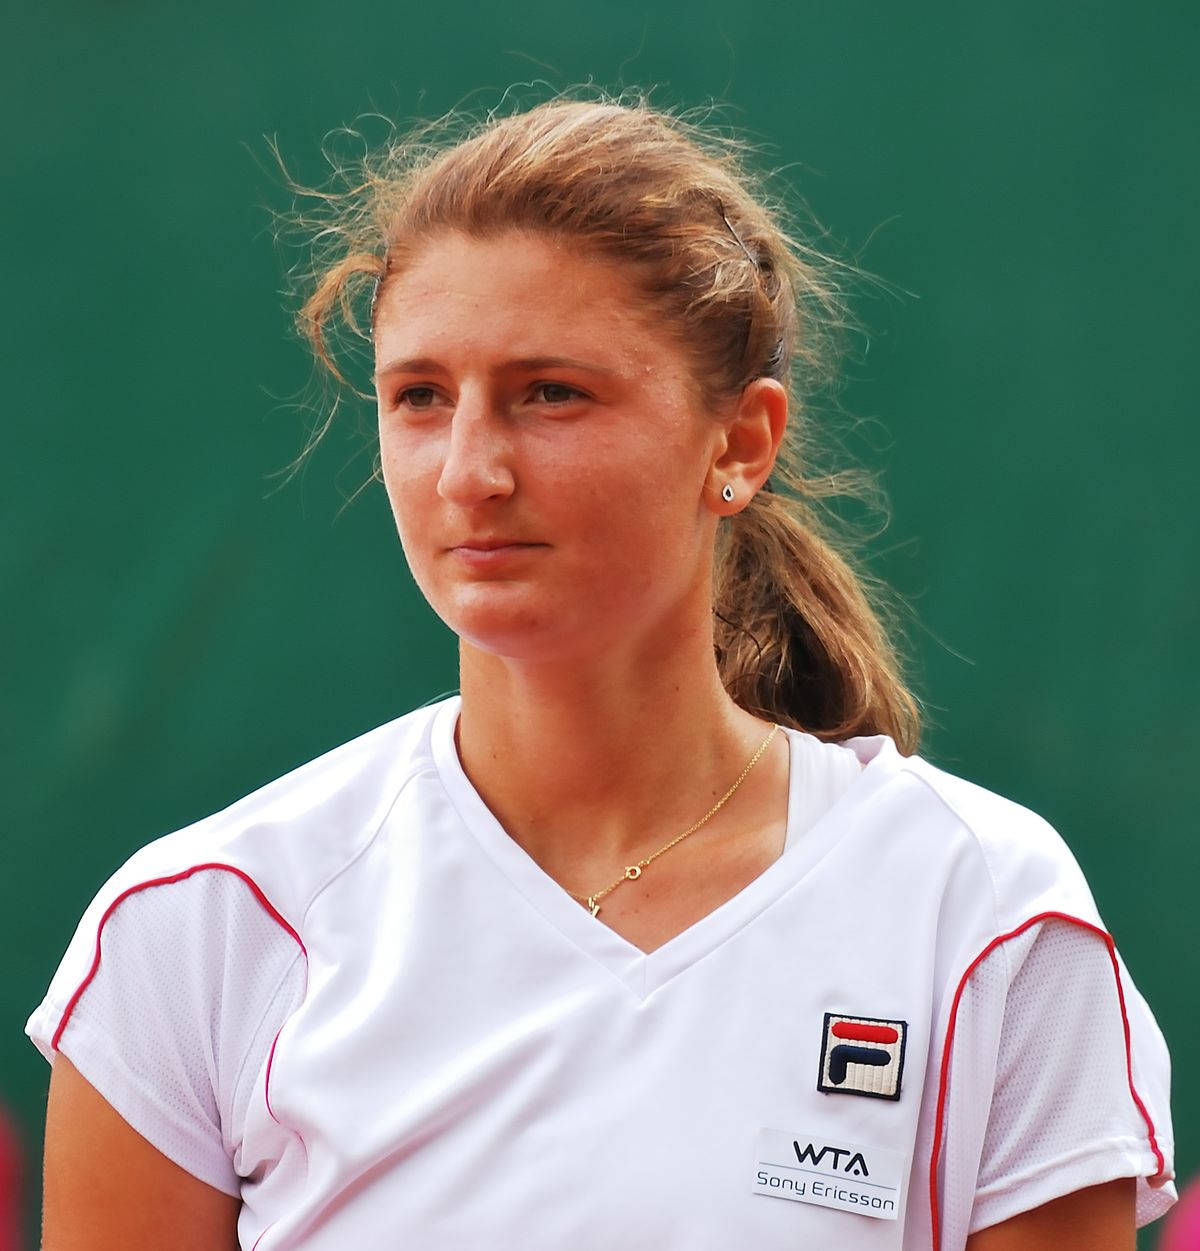 Jugadorade Tenis De Budapest 2011, Irina-camelia Begu. Fondo de pantalla